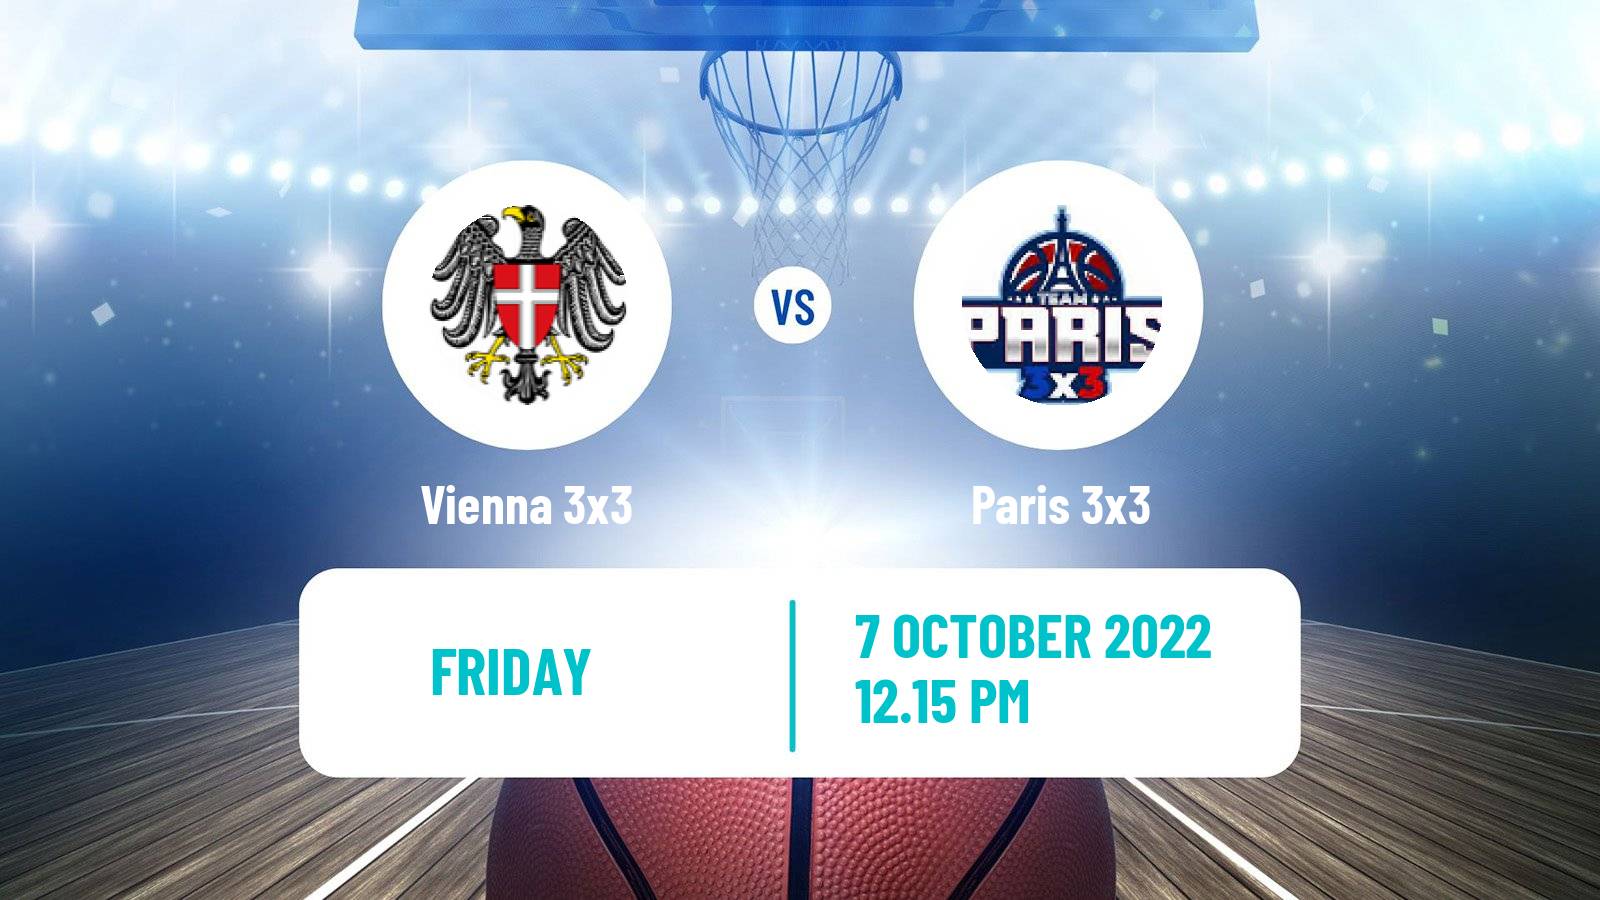 Basketball World Tour Paris 3x3 Vienna 3x3 - Paris 3x3